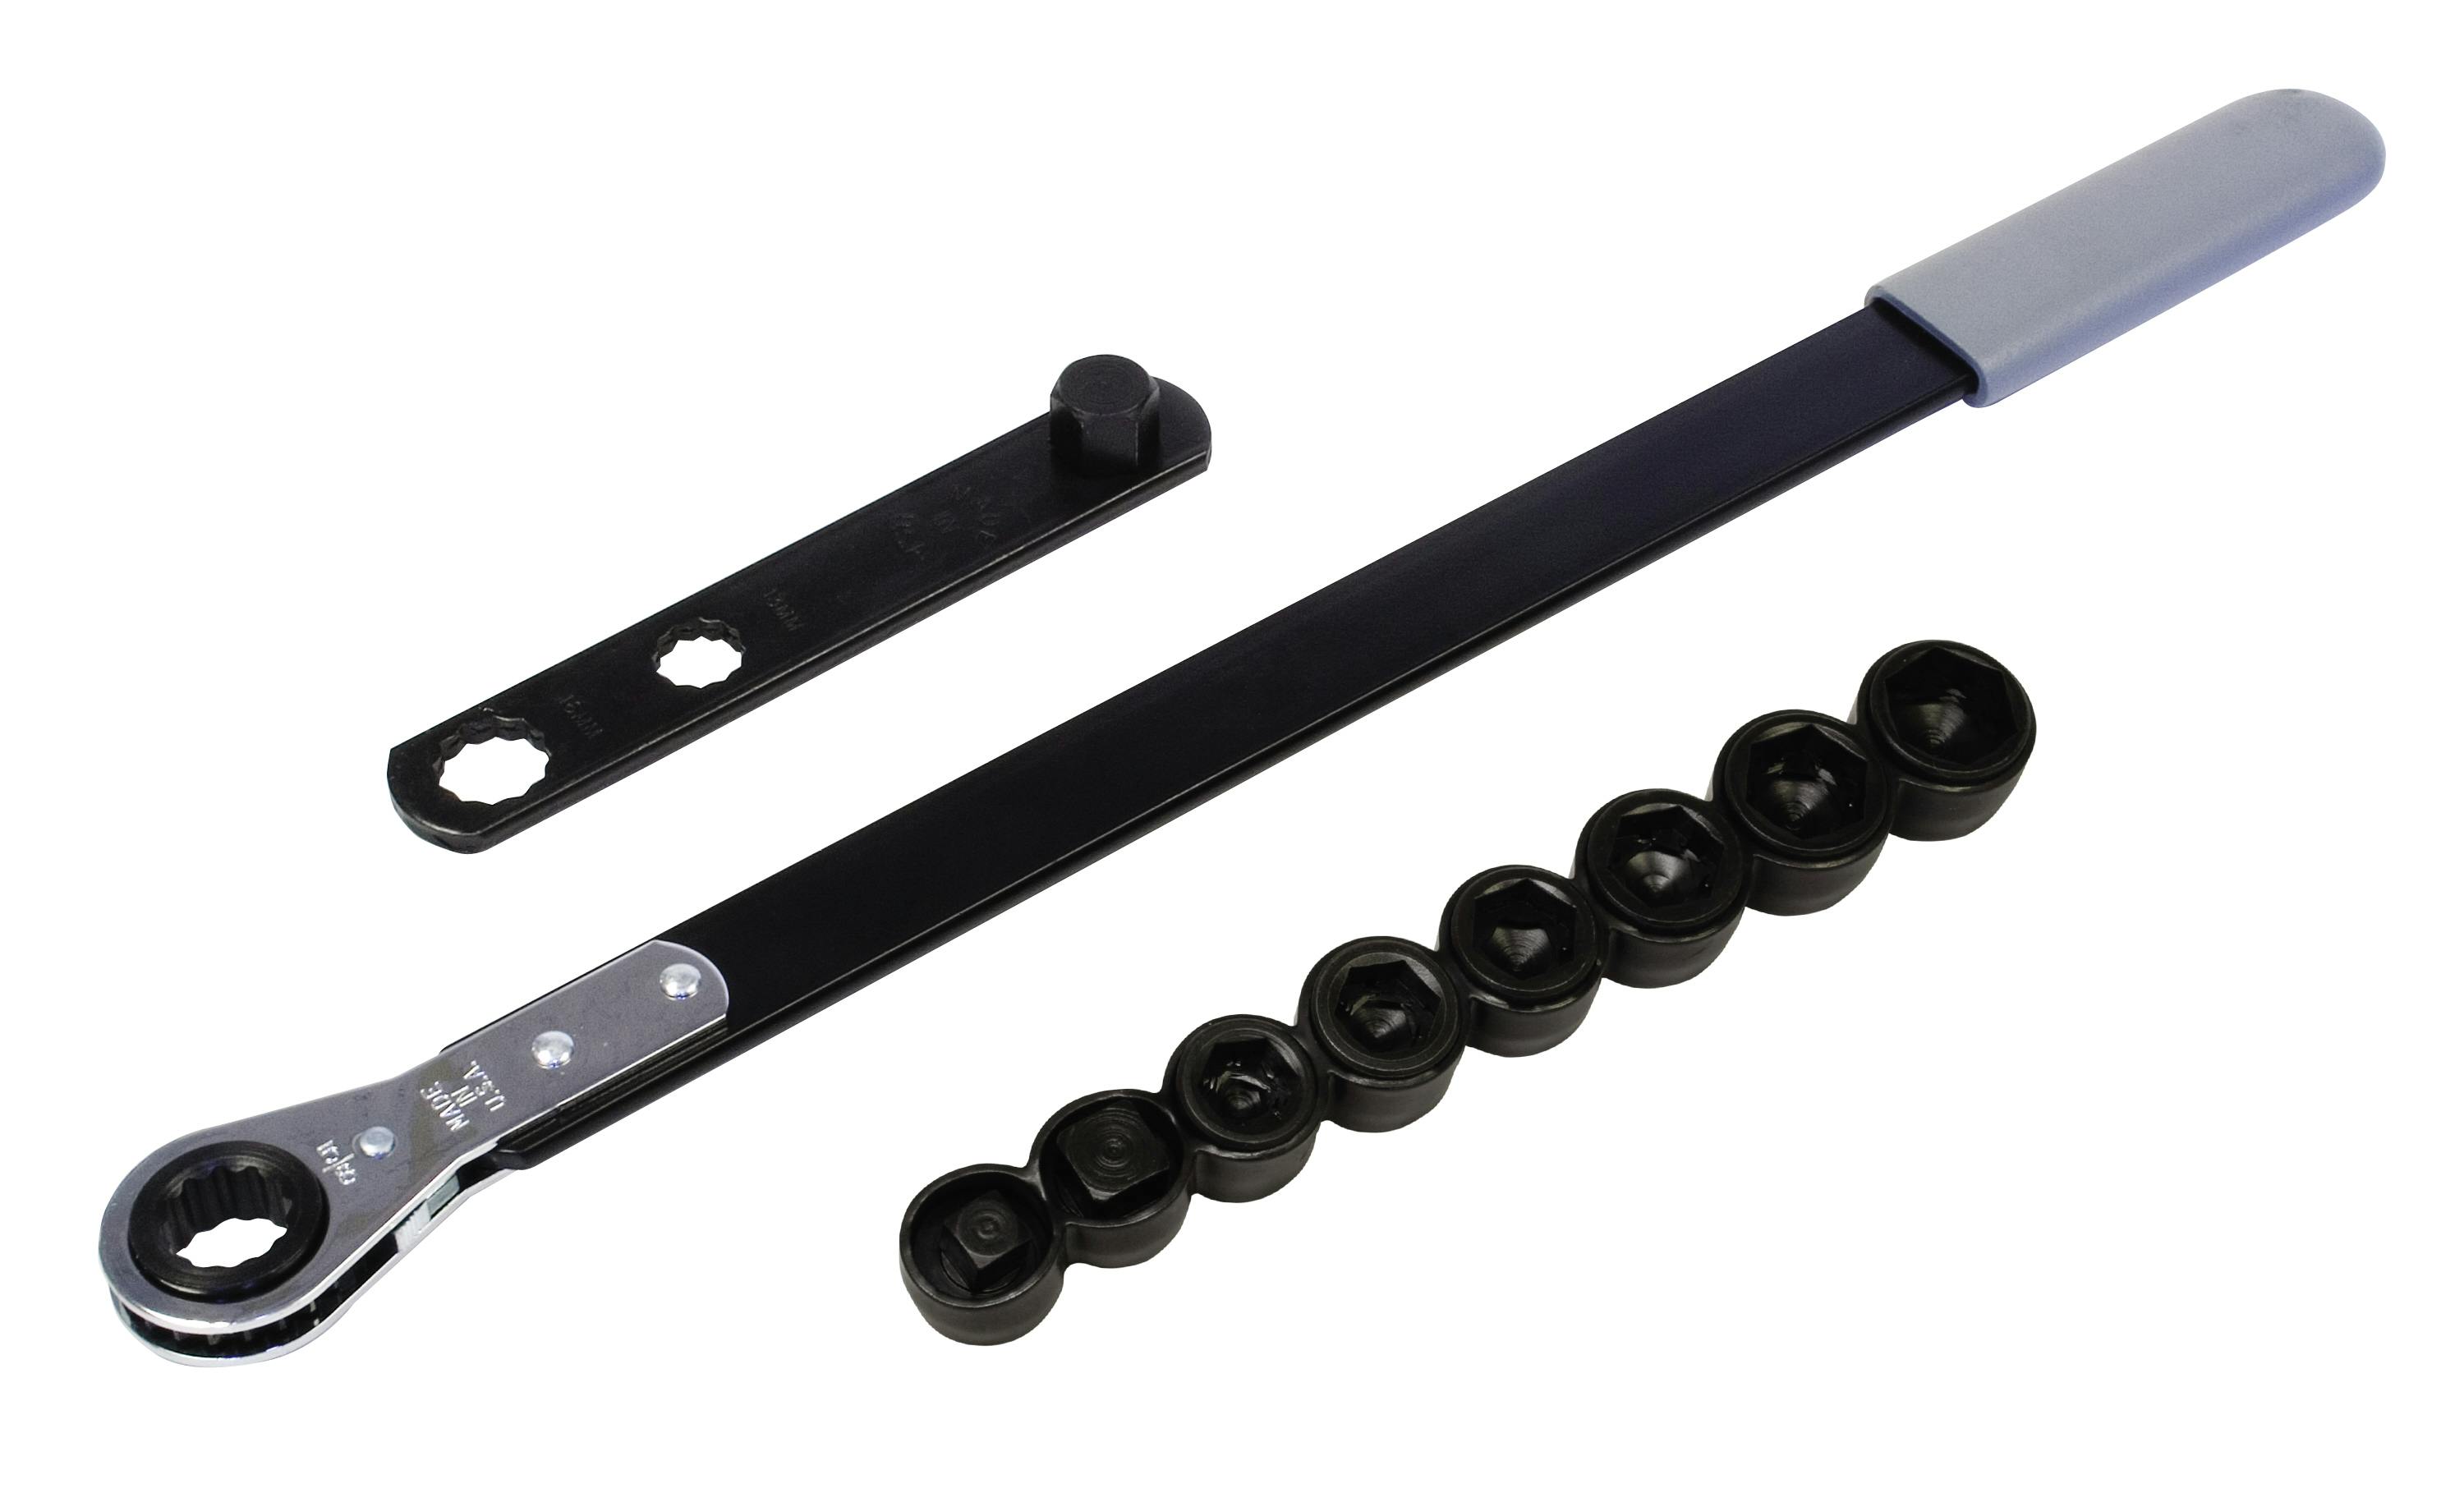 Kastar 5344 3 Piece Universal Ratcheting Serpentine Belt Wrench Set